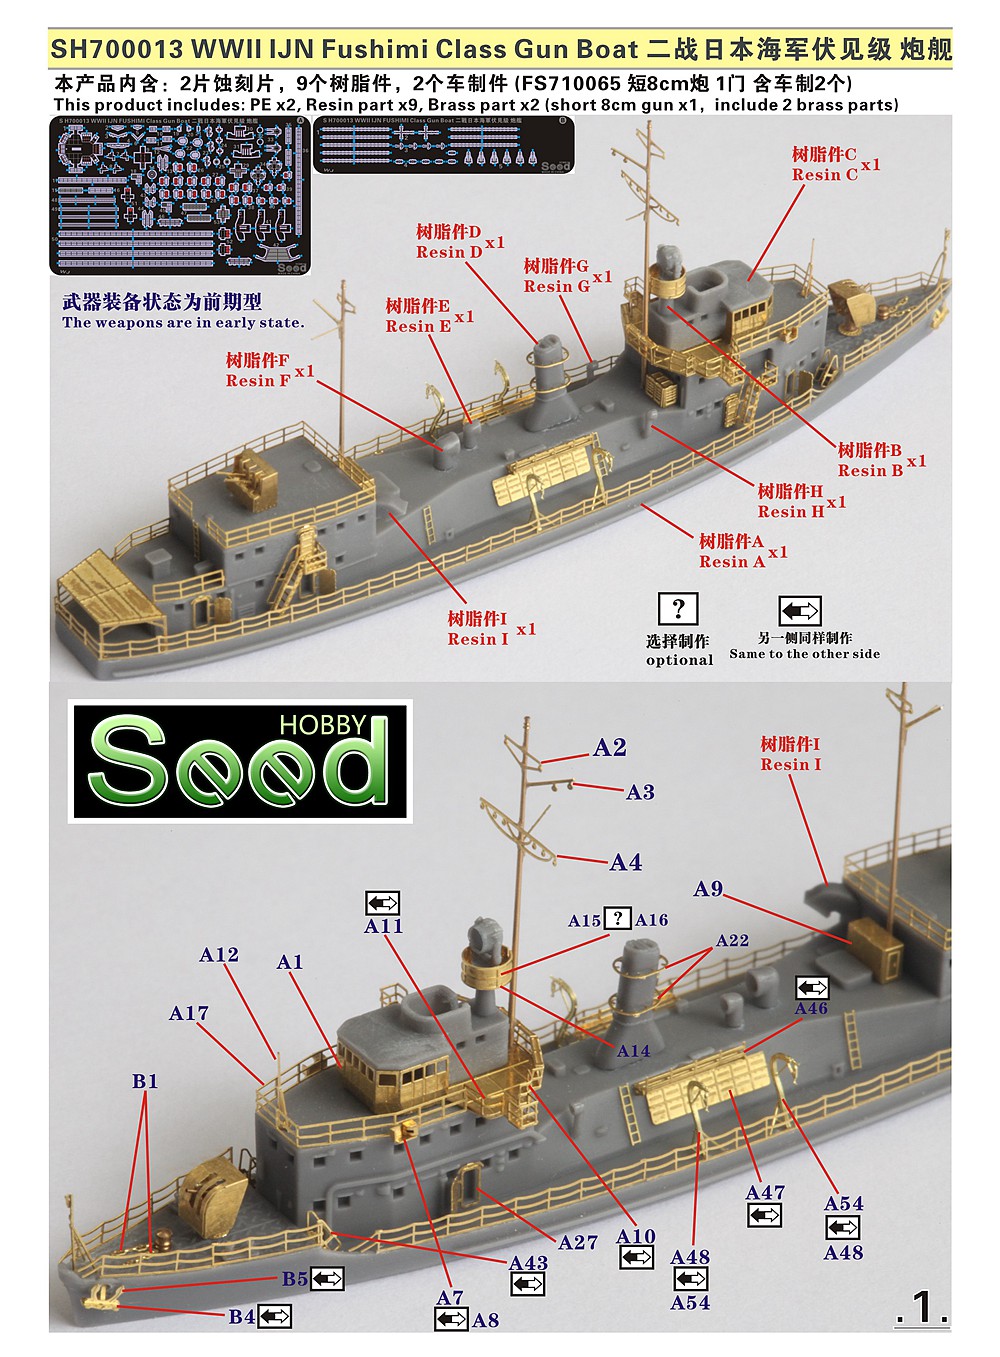 1/700 二战日本海军伏见级炮舰树脂模型套件 - 点击图像关闭